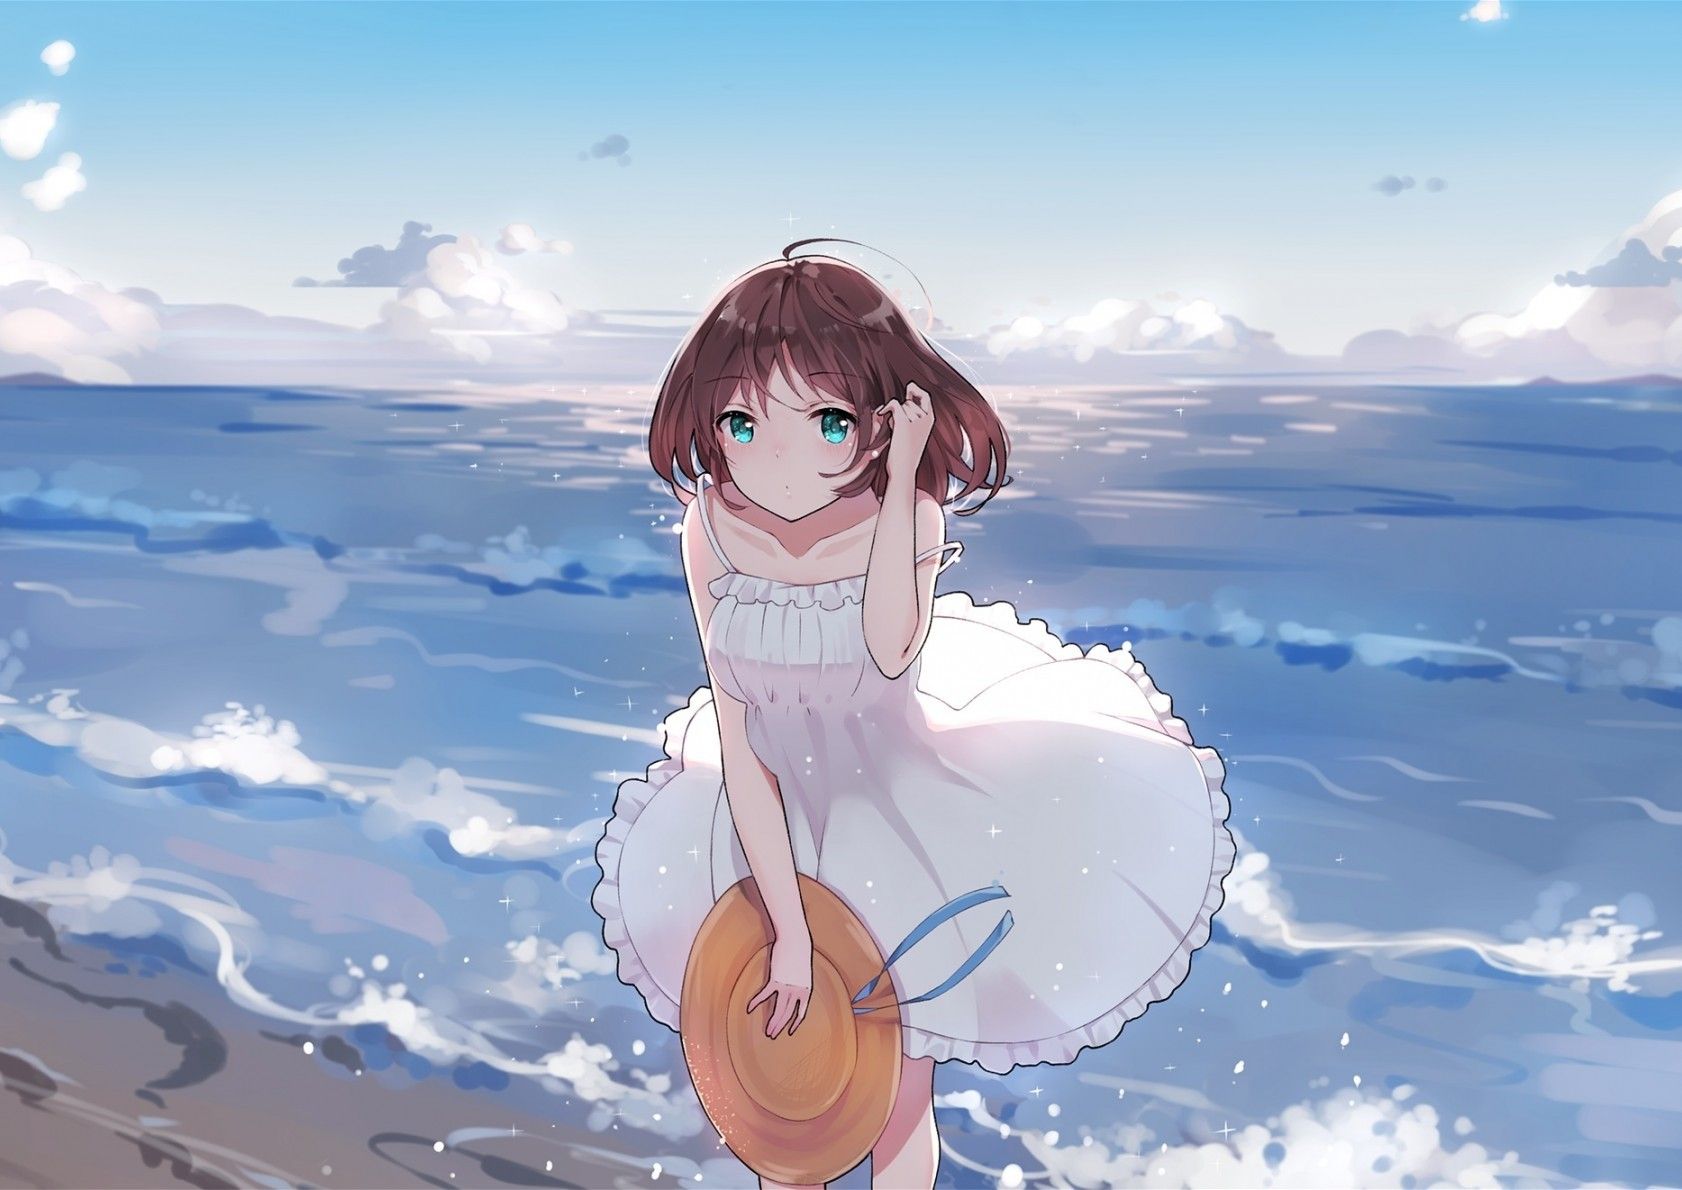 Download 1682x1190 Summer Dress, Anime Girl, Ocean, Waves, Beach